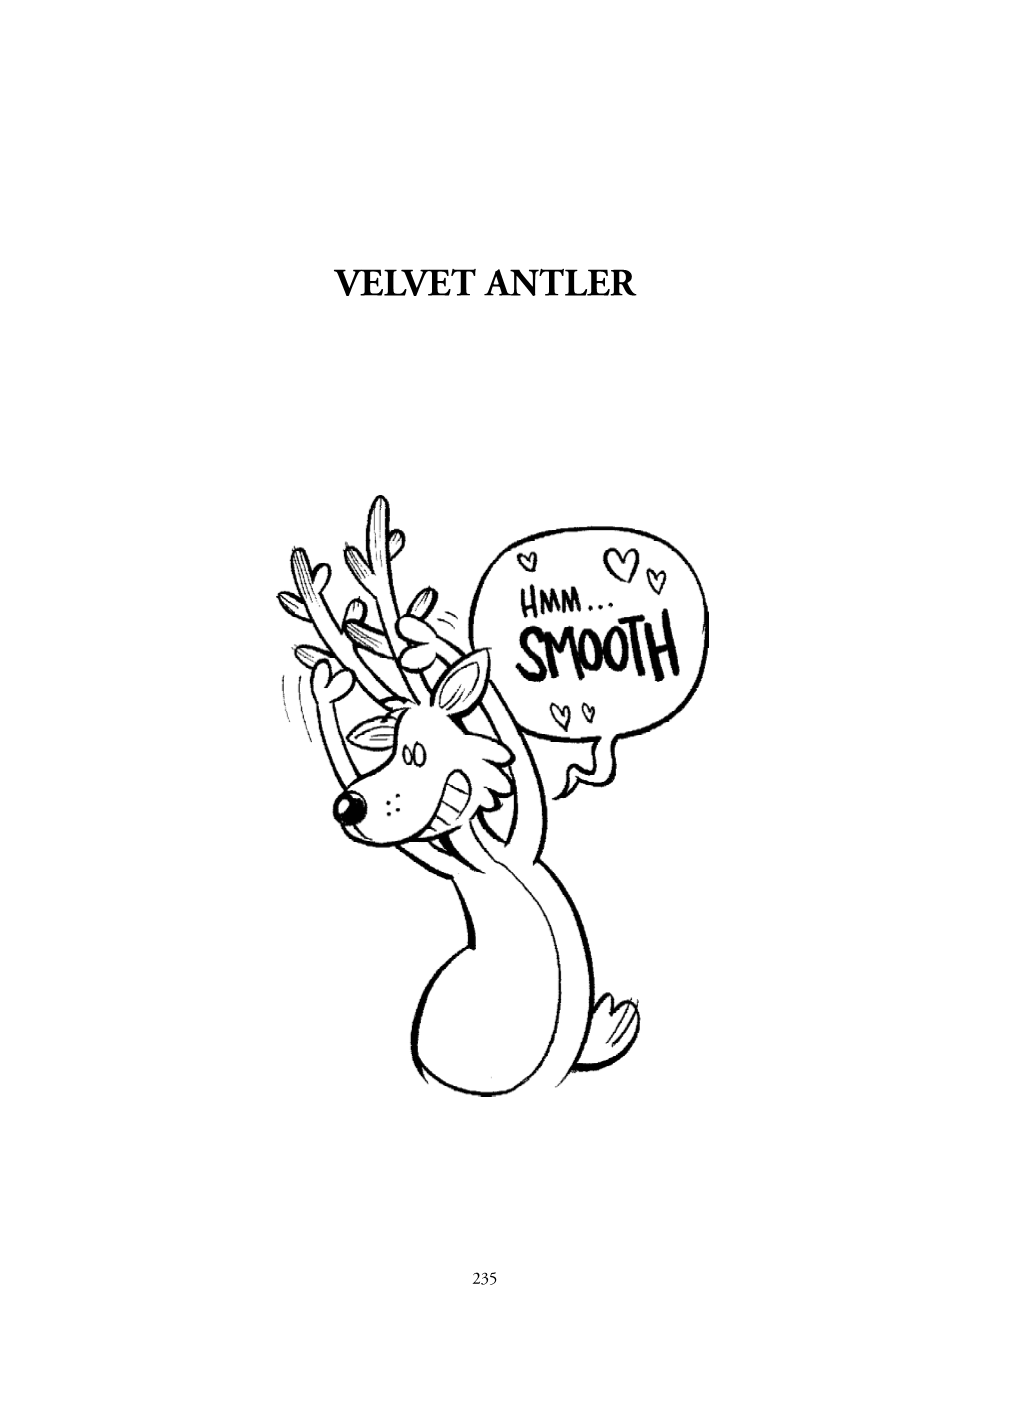 Velvet Antler